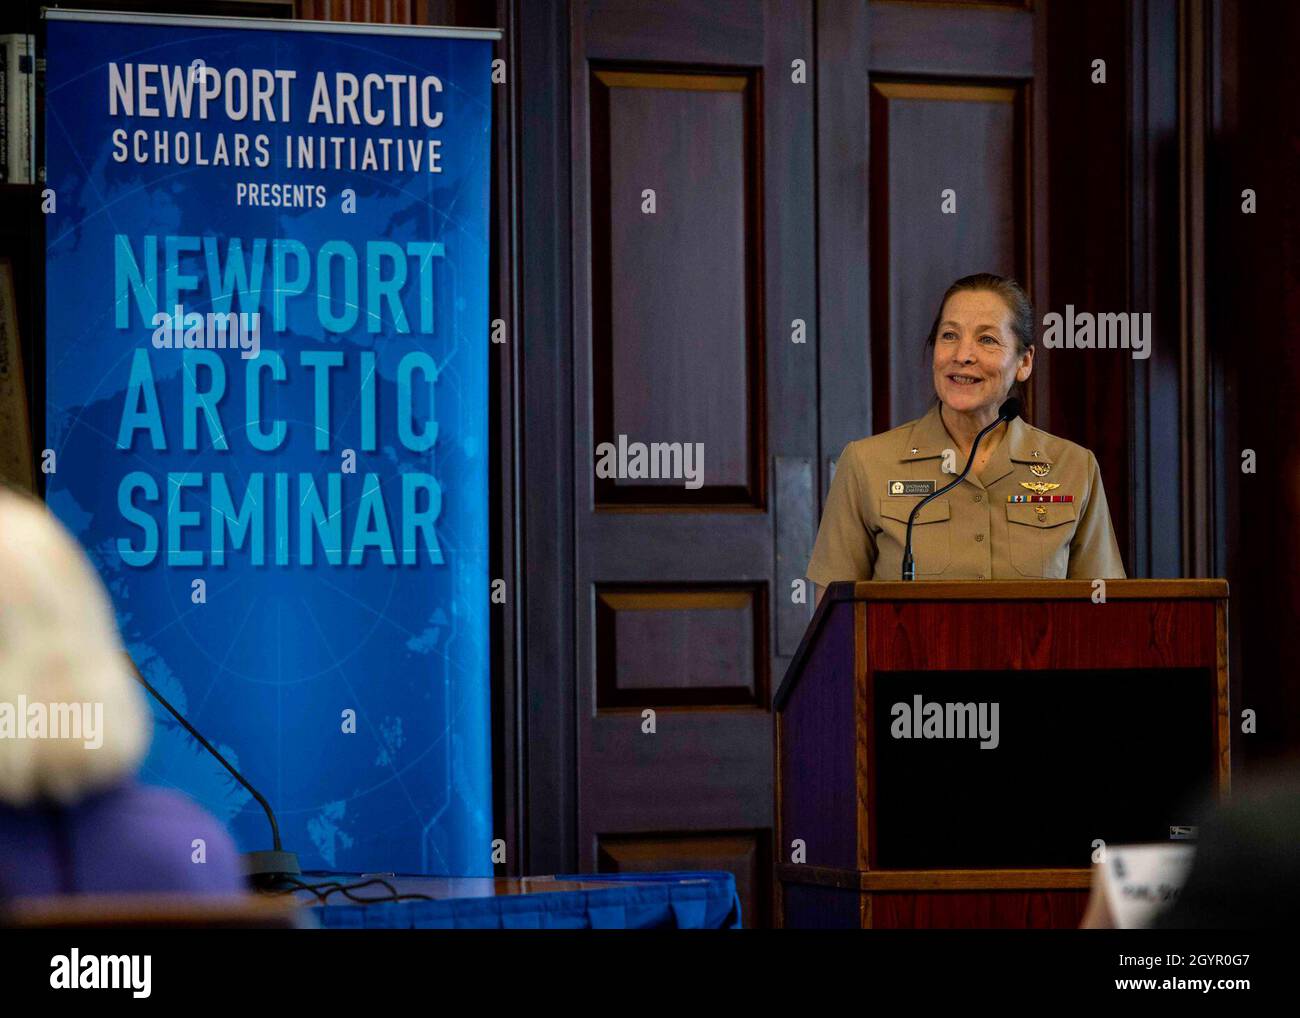 200122-N-LW865-0012 NEWPORT, R.I. (Enero 22, 2020) ADM trasero. Shoshana S. Chatfield, presidente de la Escuela Naval de Guerra de los Estados Unidos (NWC), da las palabras de apertura en el Seminario Ártico de Newport en la NWC el 22 de enero. El seminario de tres días de duración se centró en la discusión de las limitaciones, oportunidades y futuro de los foros y organizaciones regionales para la seguridad del Ártico. También exploró las ventajas y desventajas de la seguridad regional ártica, las razones oficiales y no oficiales para intervenir, las cuestiones político-militares y cómo las naciones pueden fortalecer sus navies para mantener canales abiertos de comunicación, prevenir y manejar Foto de stock